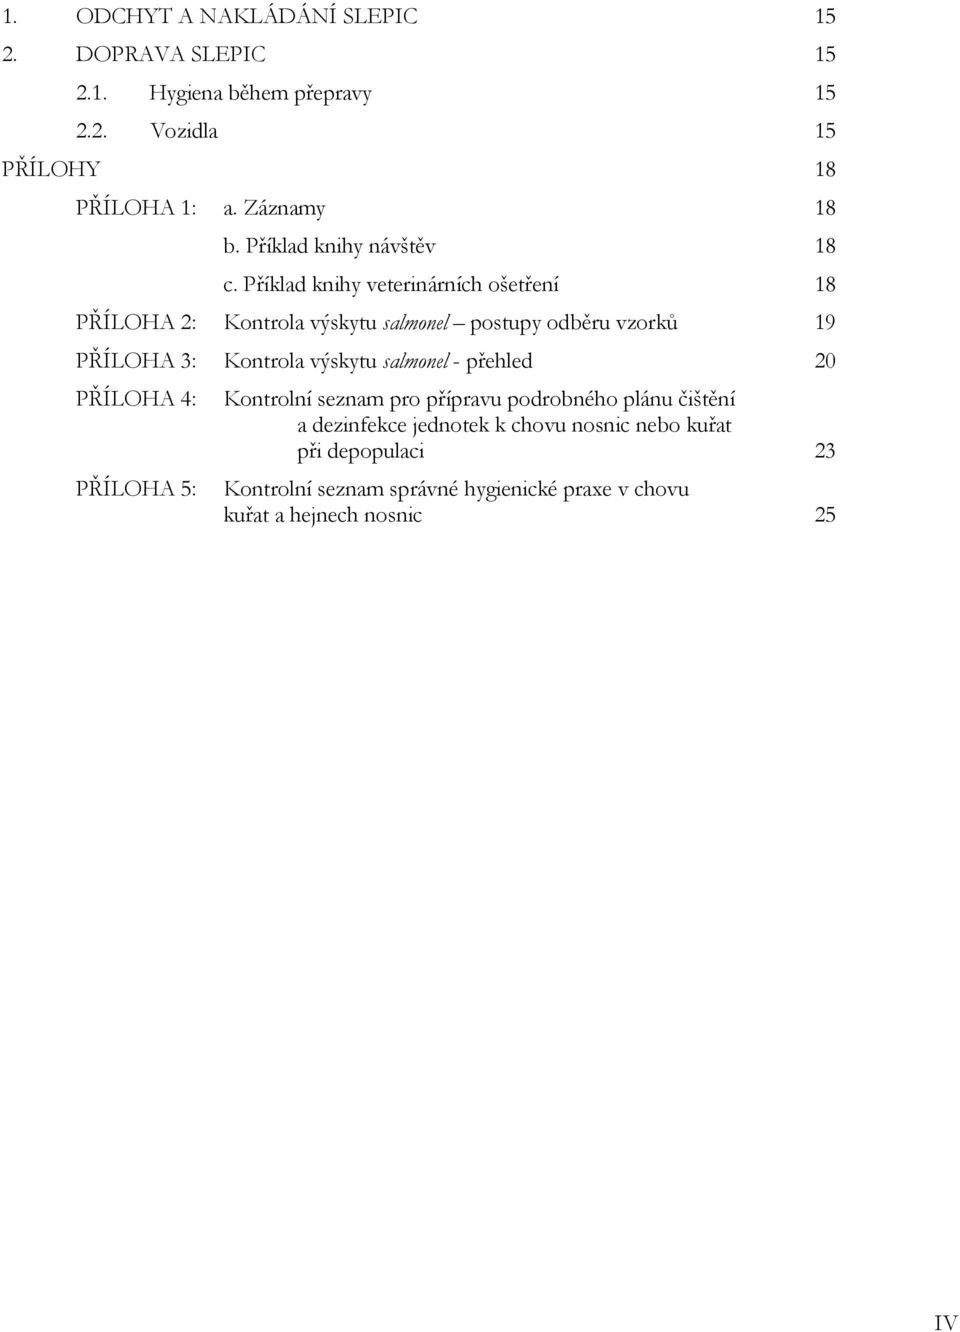 Příklad knihy veterinárních ošetření 18 PŘÍLOHA 2: Kontrola výskytu salmonel postupy odběru vzorků 19 PŘÍLOHA 3: Kontrola výskytu